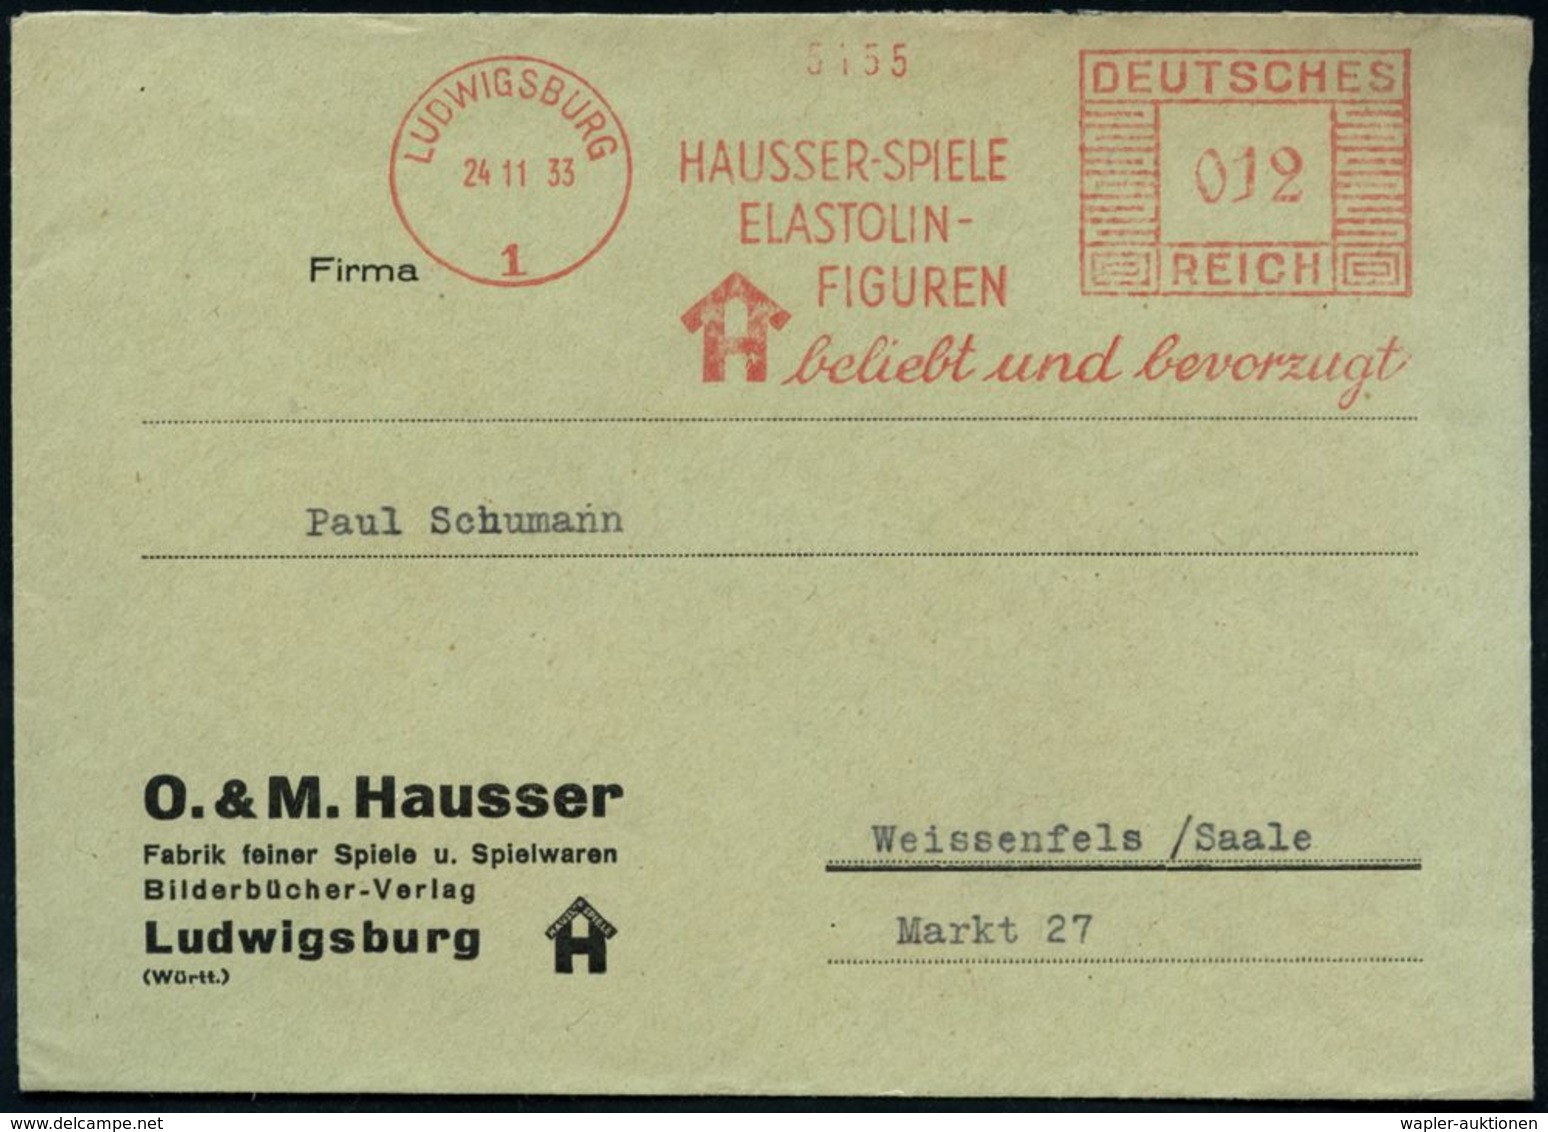 LUDWIGSBURG/ 1/ HAUSSER-SPIELE/ ELASTOLIN-/ FIGUREN/ Beliebt U.bevorzugt 1933 (24.11.) AFS (Monogr.-Logo) Klar Gest. Mot - Ohne Zuordnung